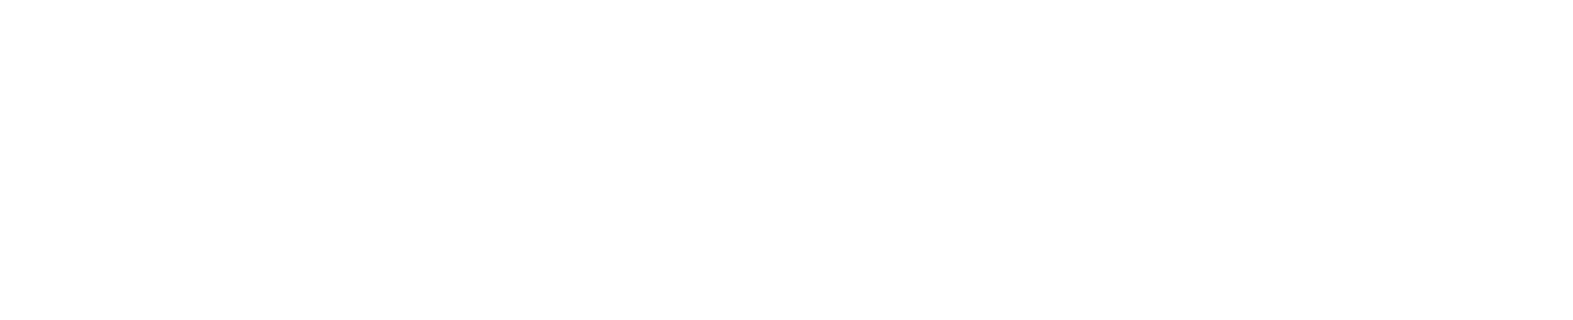 Pan American Silver
 logo grand pour les fonds sombres (PNG transparent)